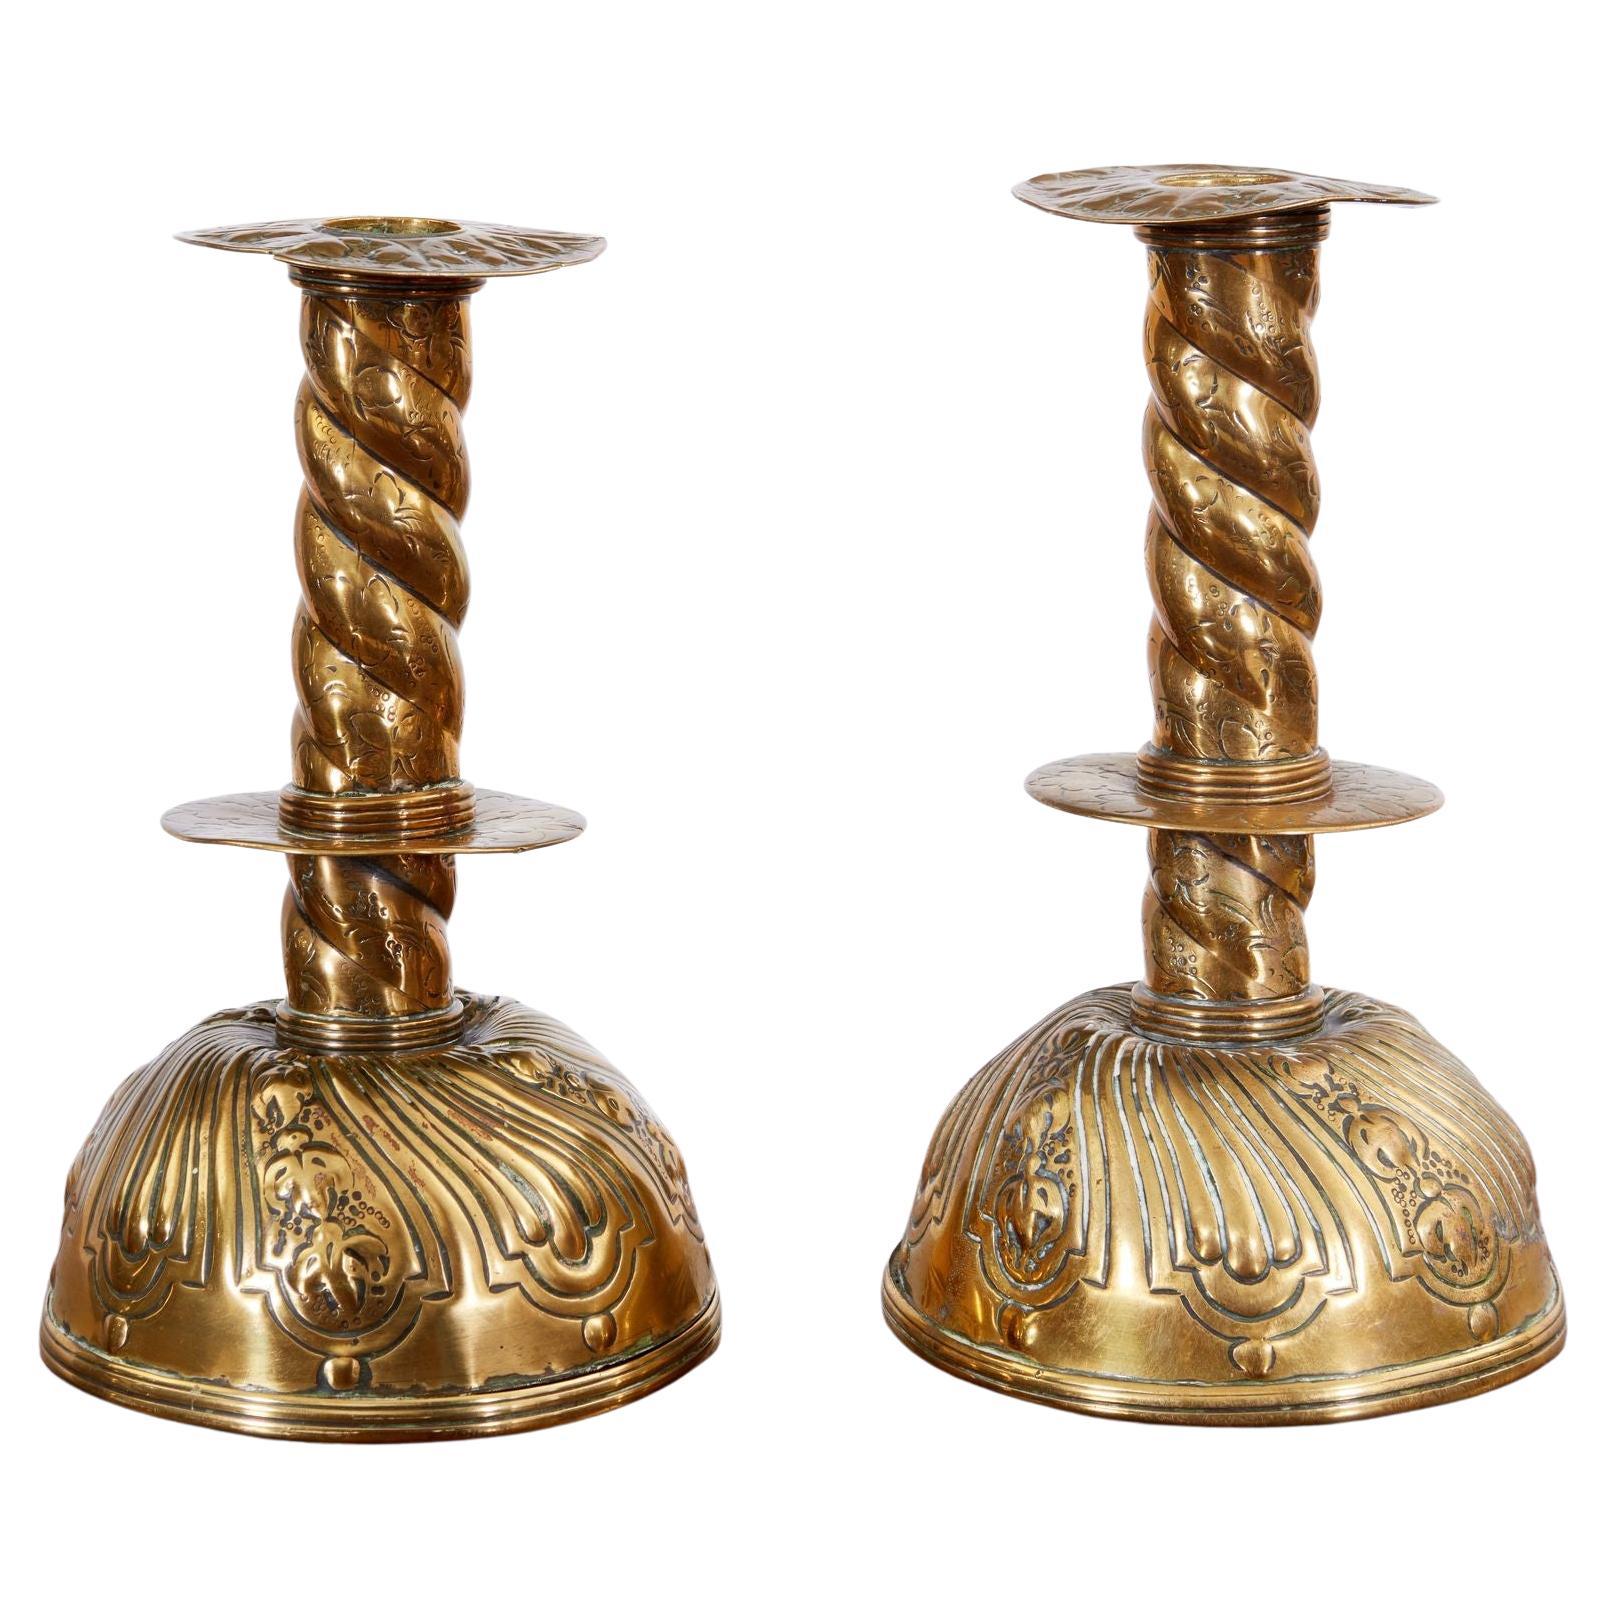 Paire de chandeliers suédois du 18e siècle